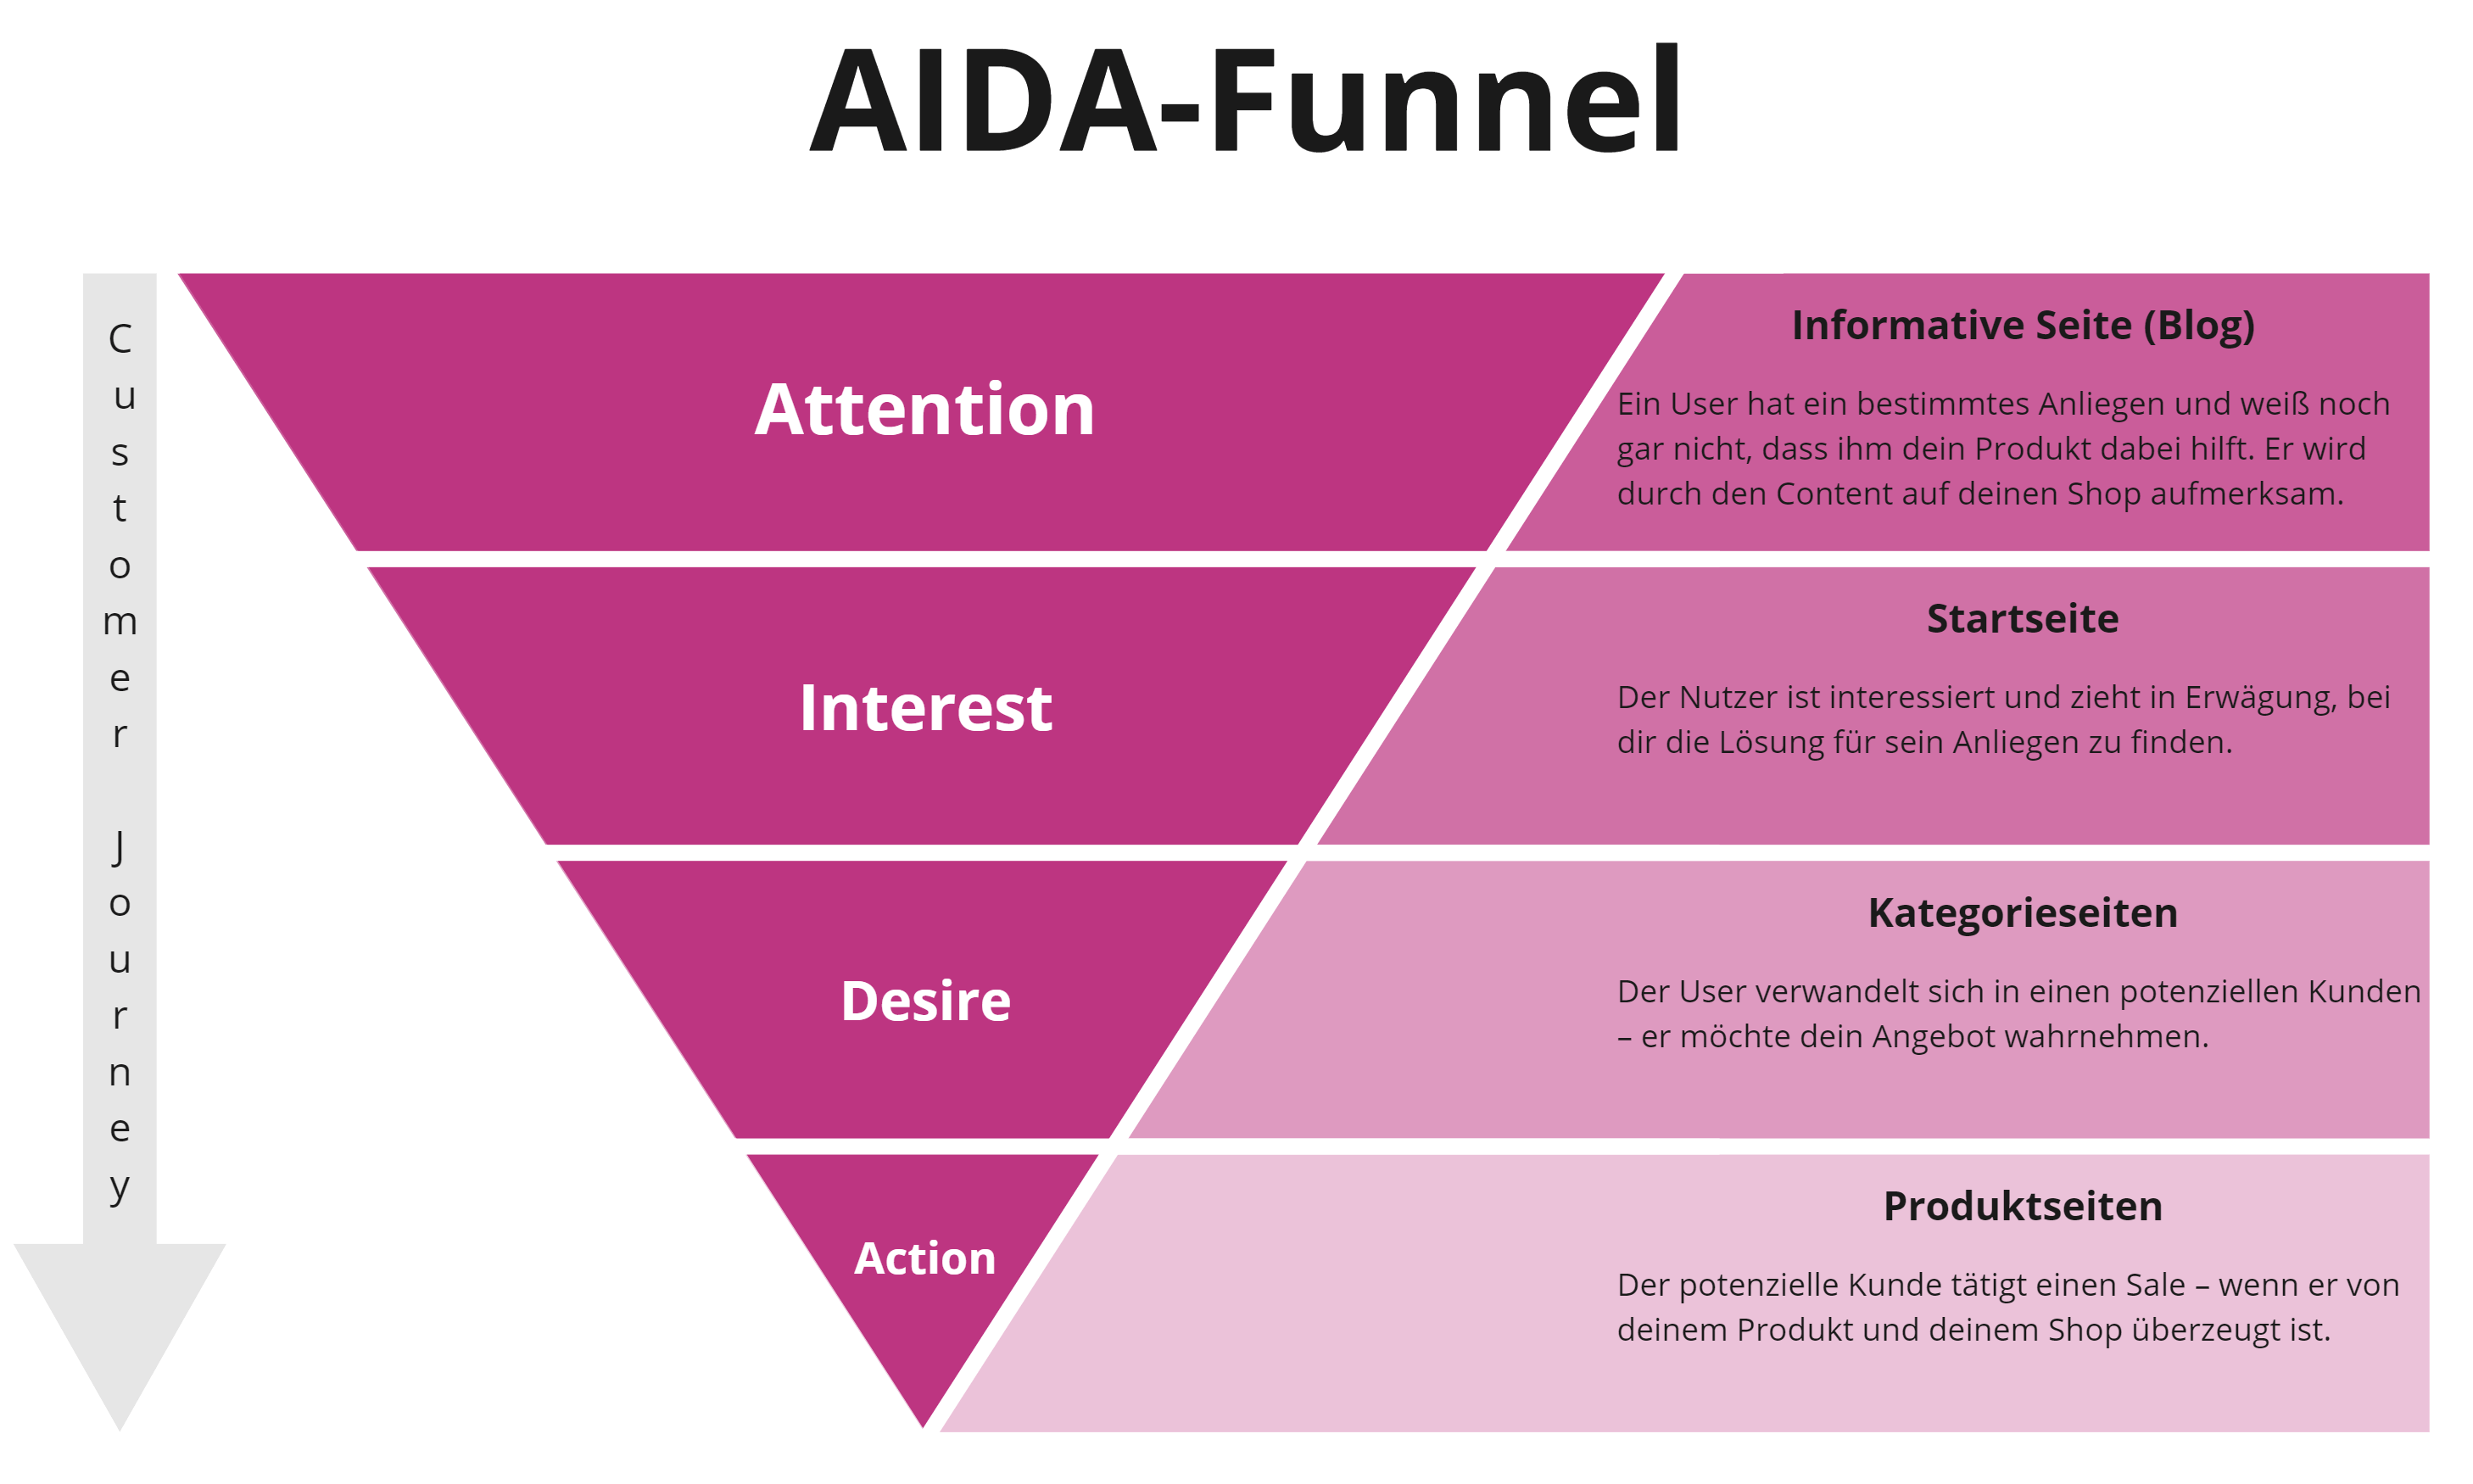 Content-Formate im AIDA-Funnel.